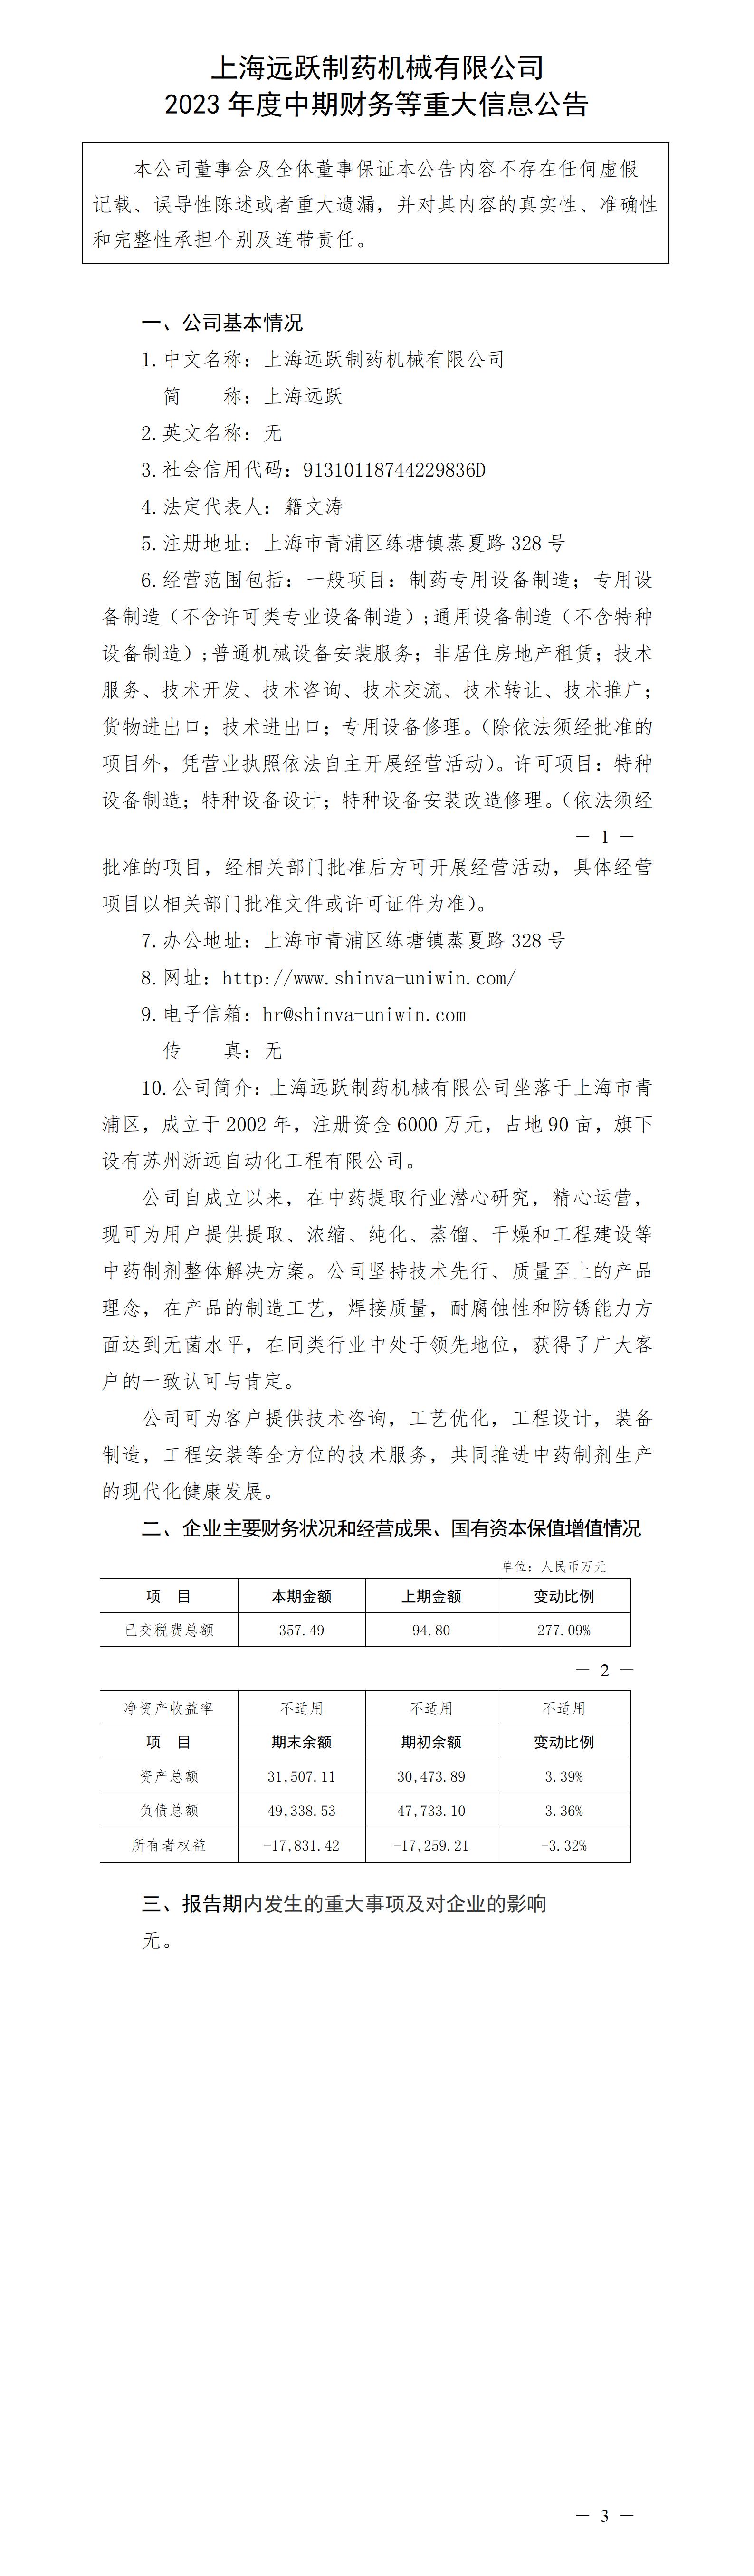 上海遠躍制藥機械有限公司2023年度中期財務等重大信息公告_01.jpg